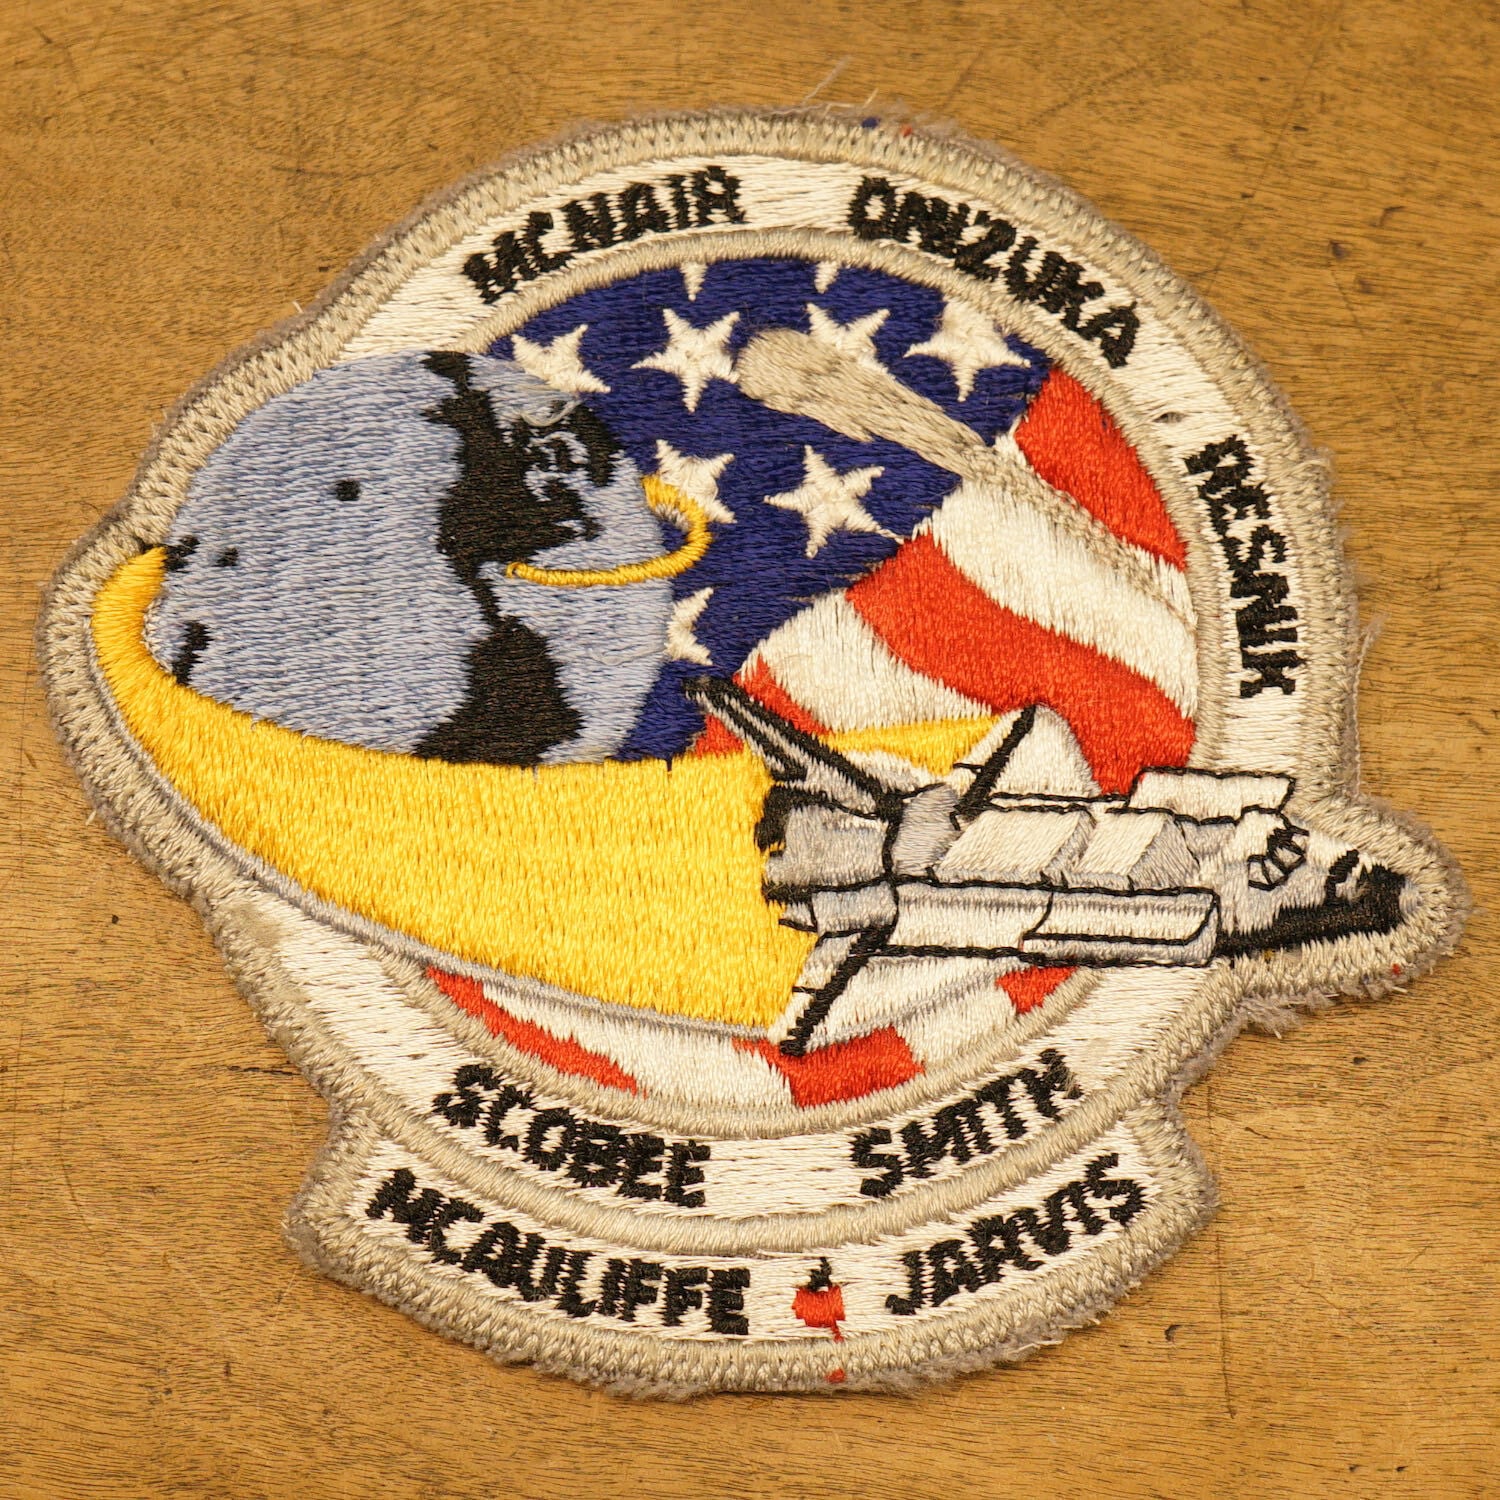 799G9 スペースシャトル チャレンジャー号 STS-51-L NASA ワッペン